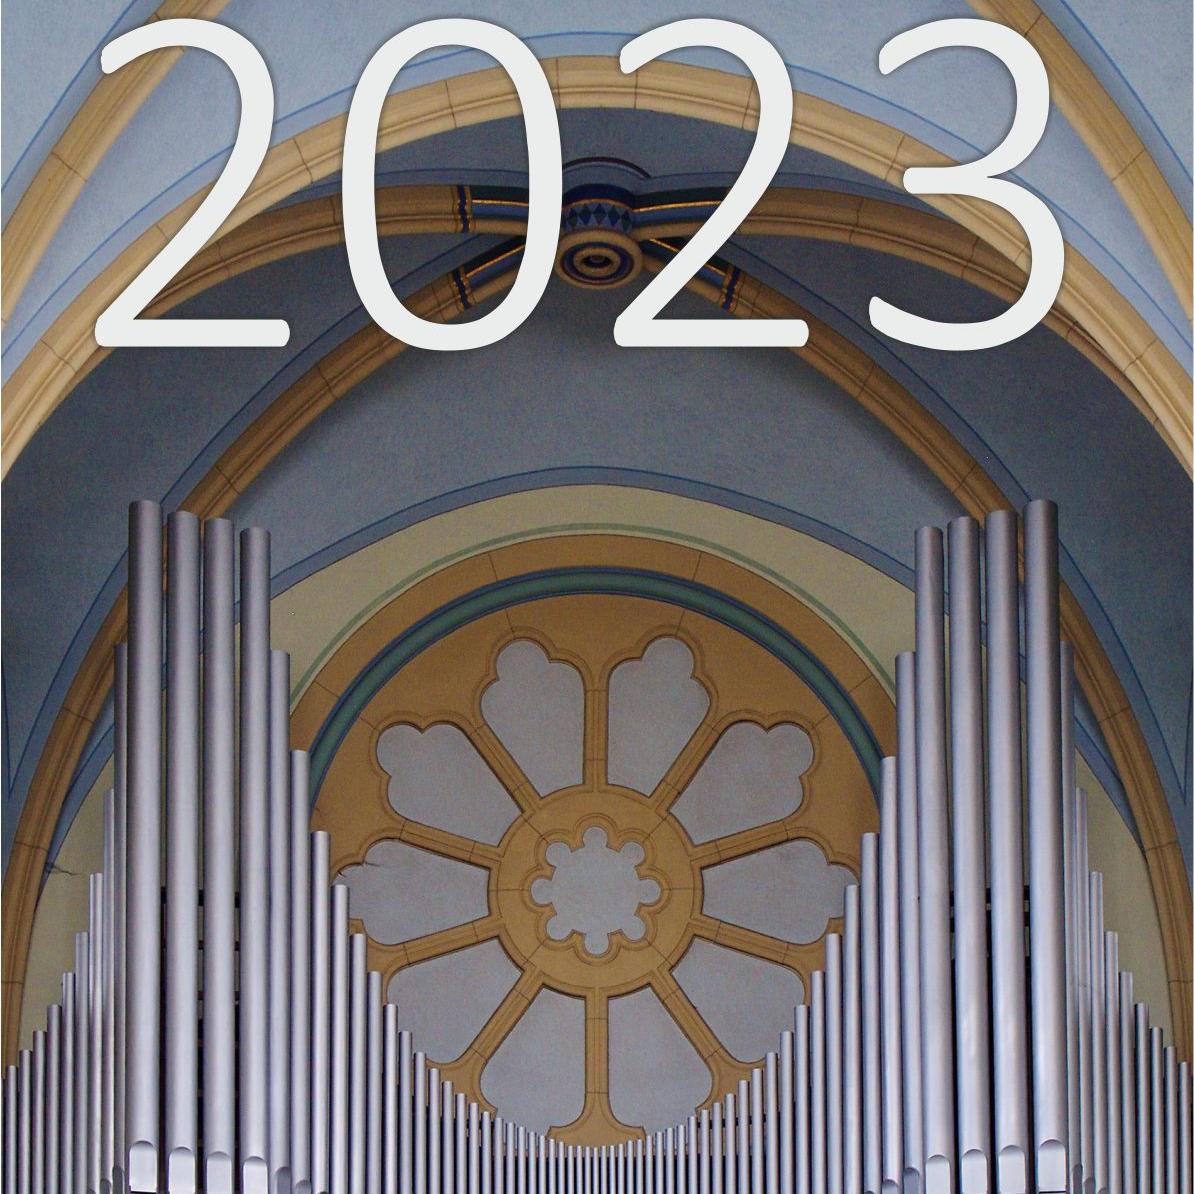 Jahresprogramm 2023